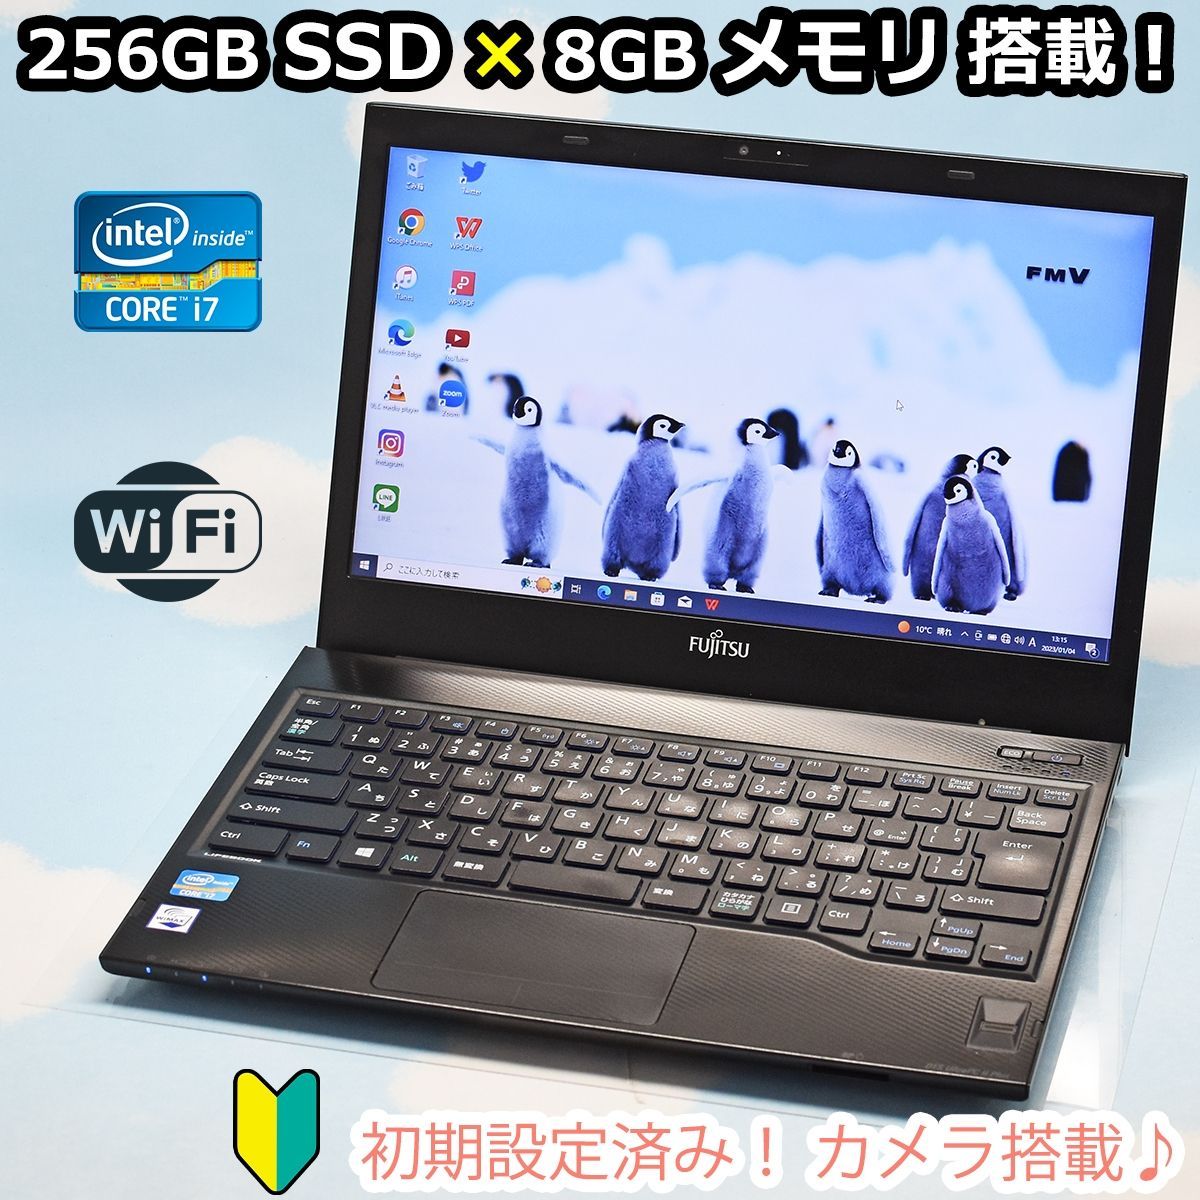 【富士通】ライフブック i7 新品SSD256GB 8GB  黒 ノートPC